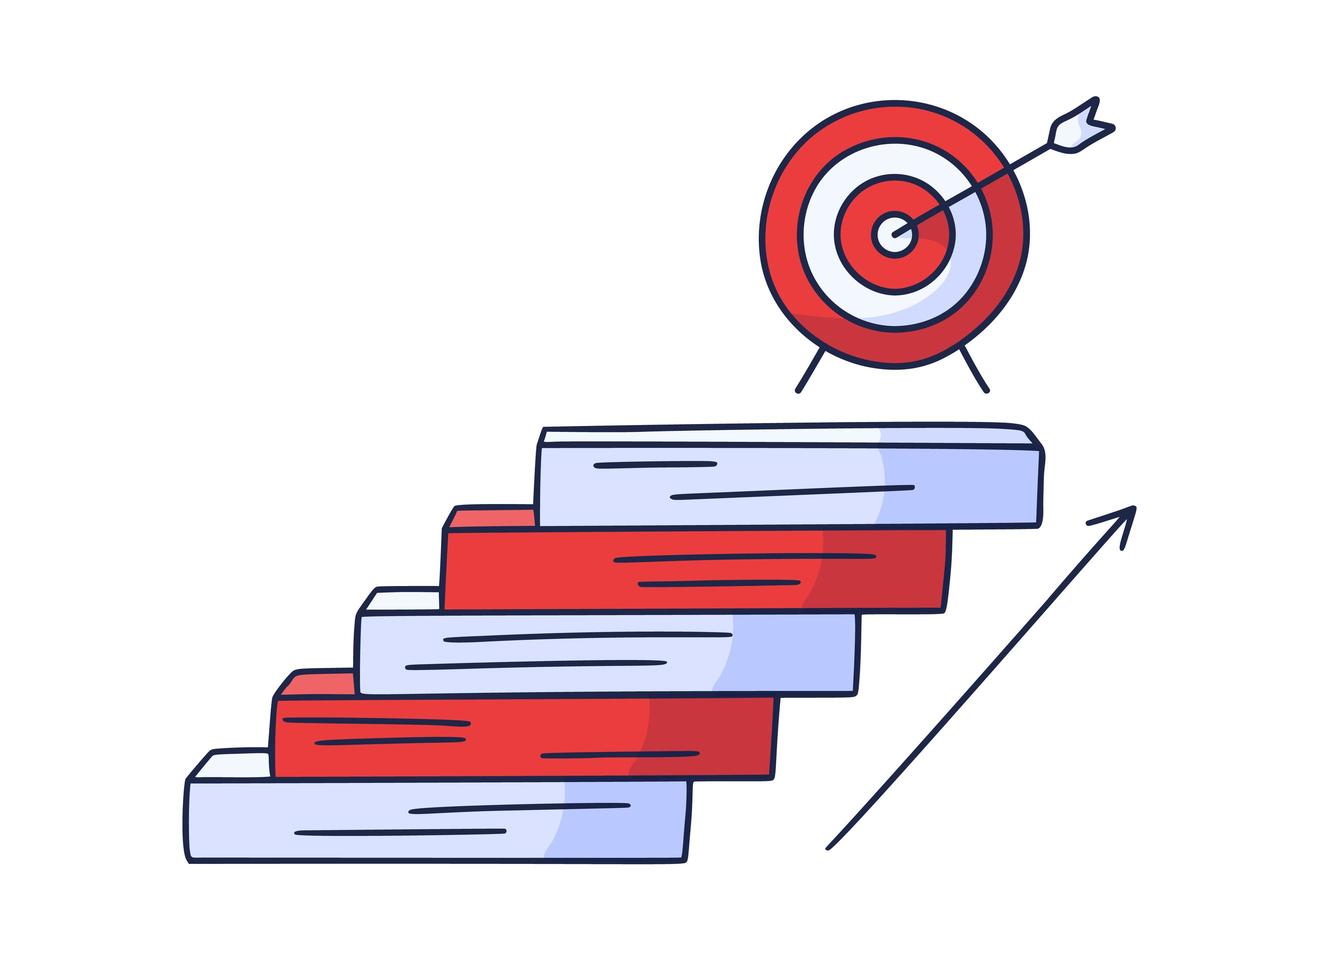 steg upp till målet. vektor doodle illustration ritas för hand med steg eller trappor på vilka en ikon för mål och pil. vägen till framgång och uppnå mål